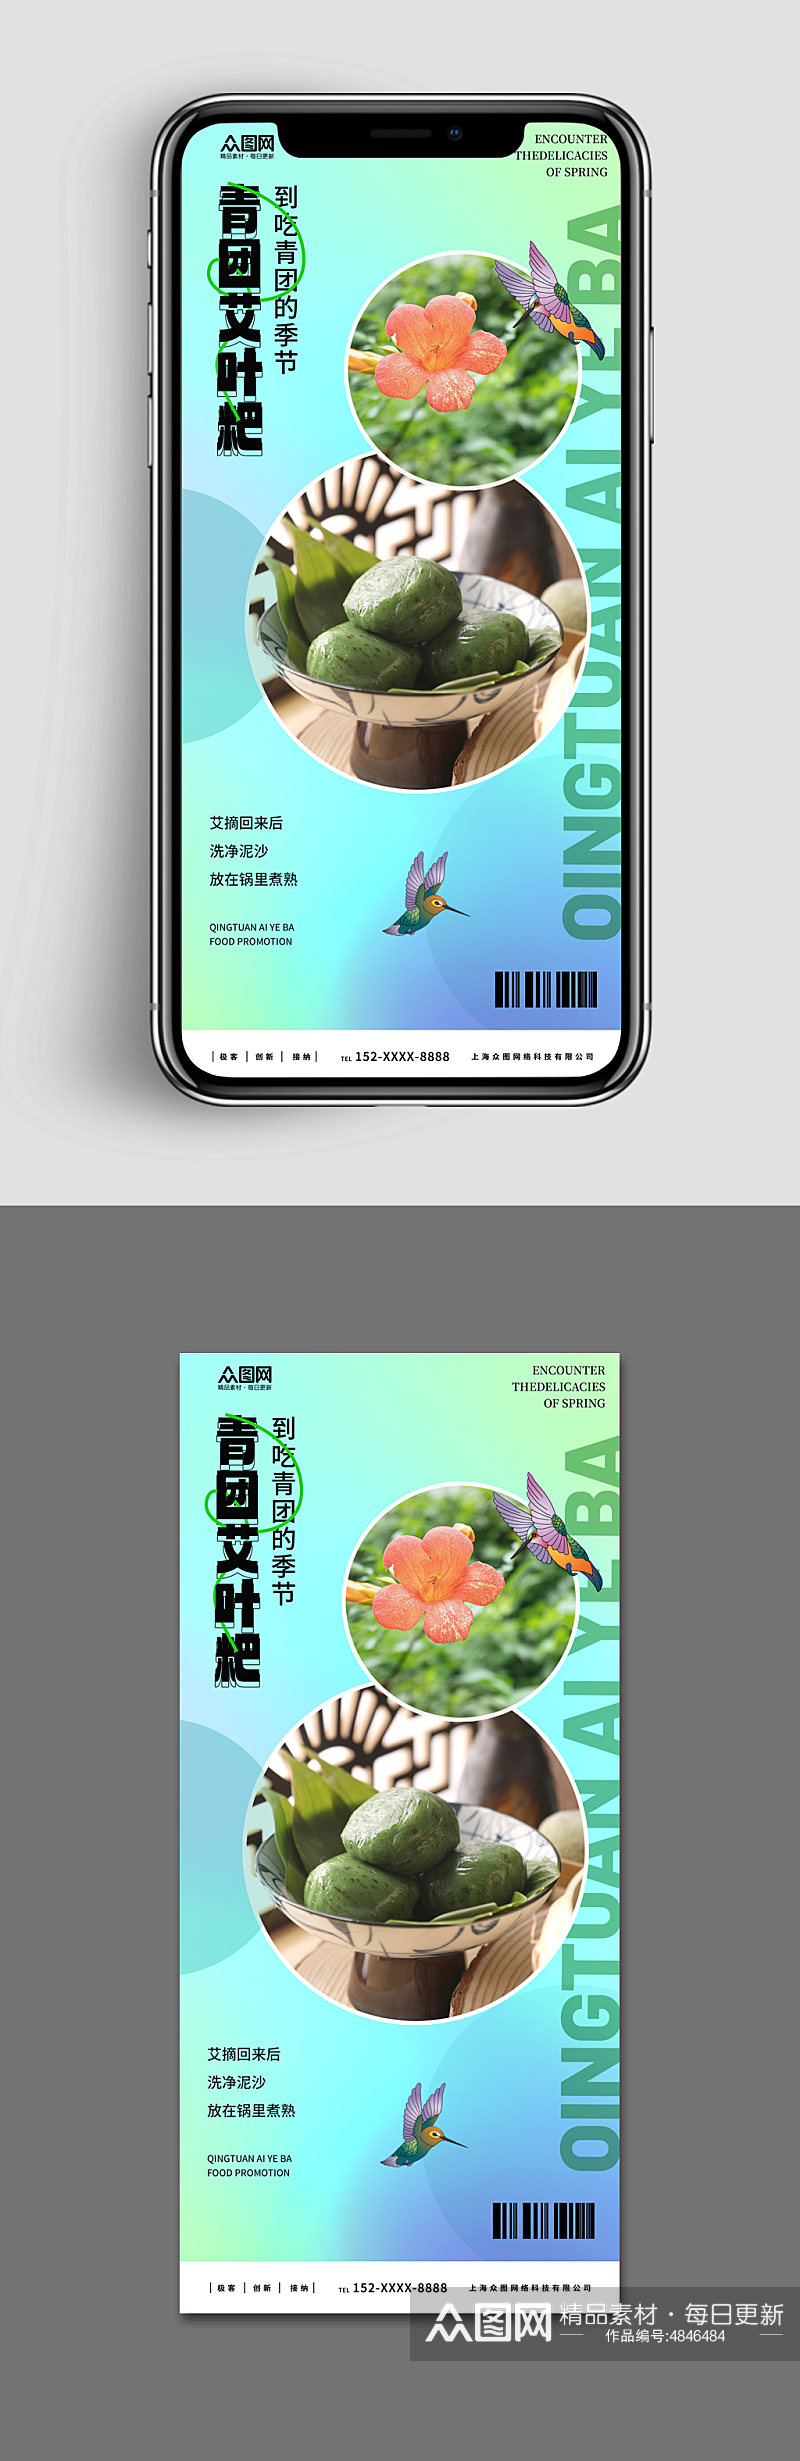 新媒体手机海报青团艾叶粑美食宣传海报素材